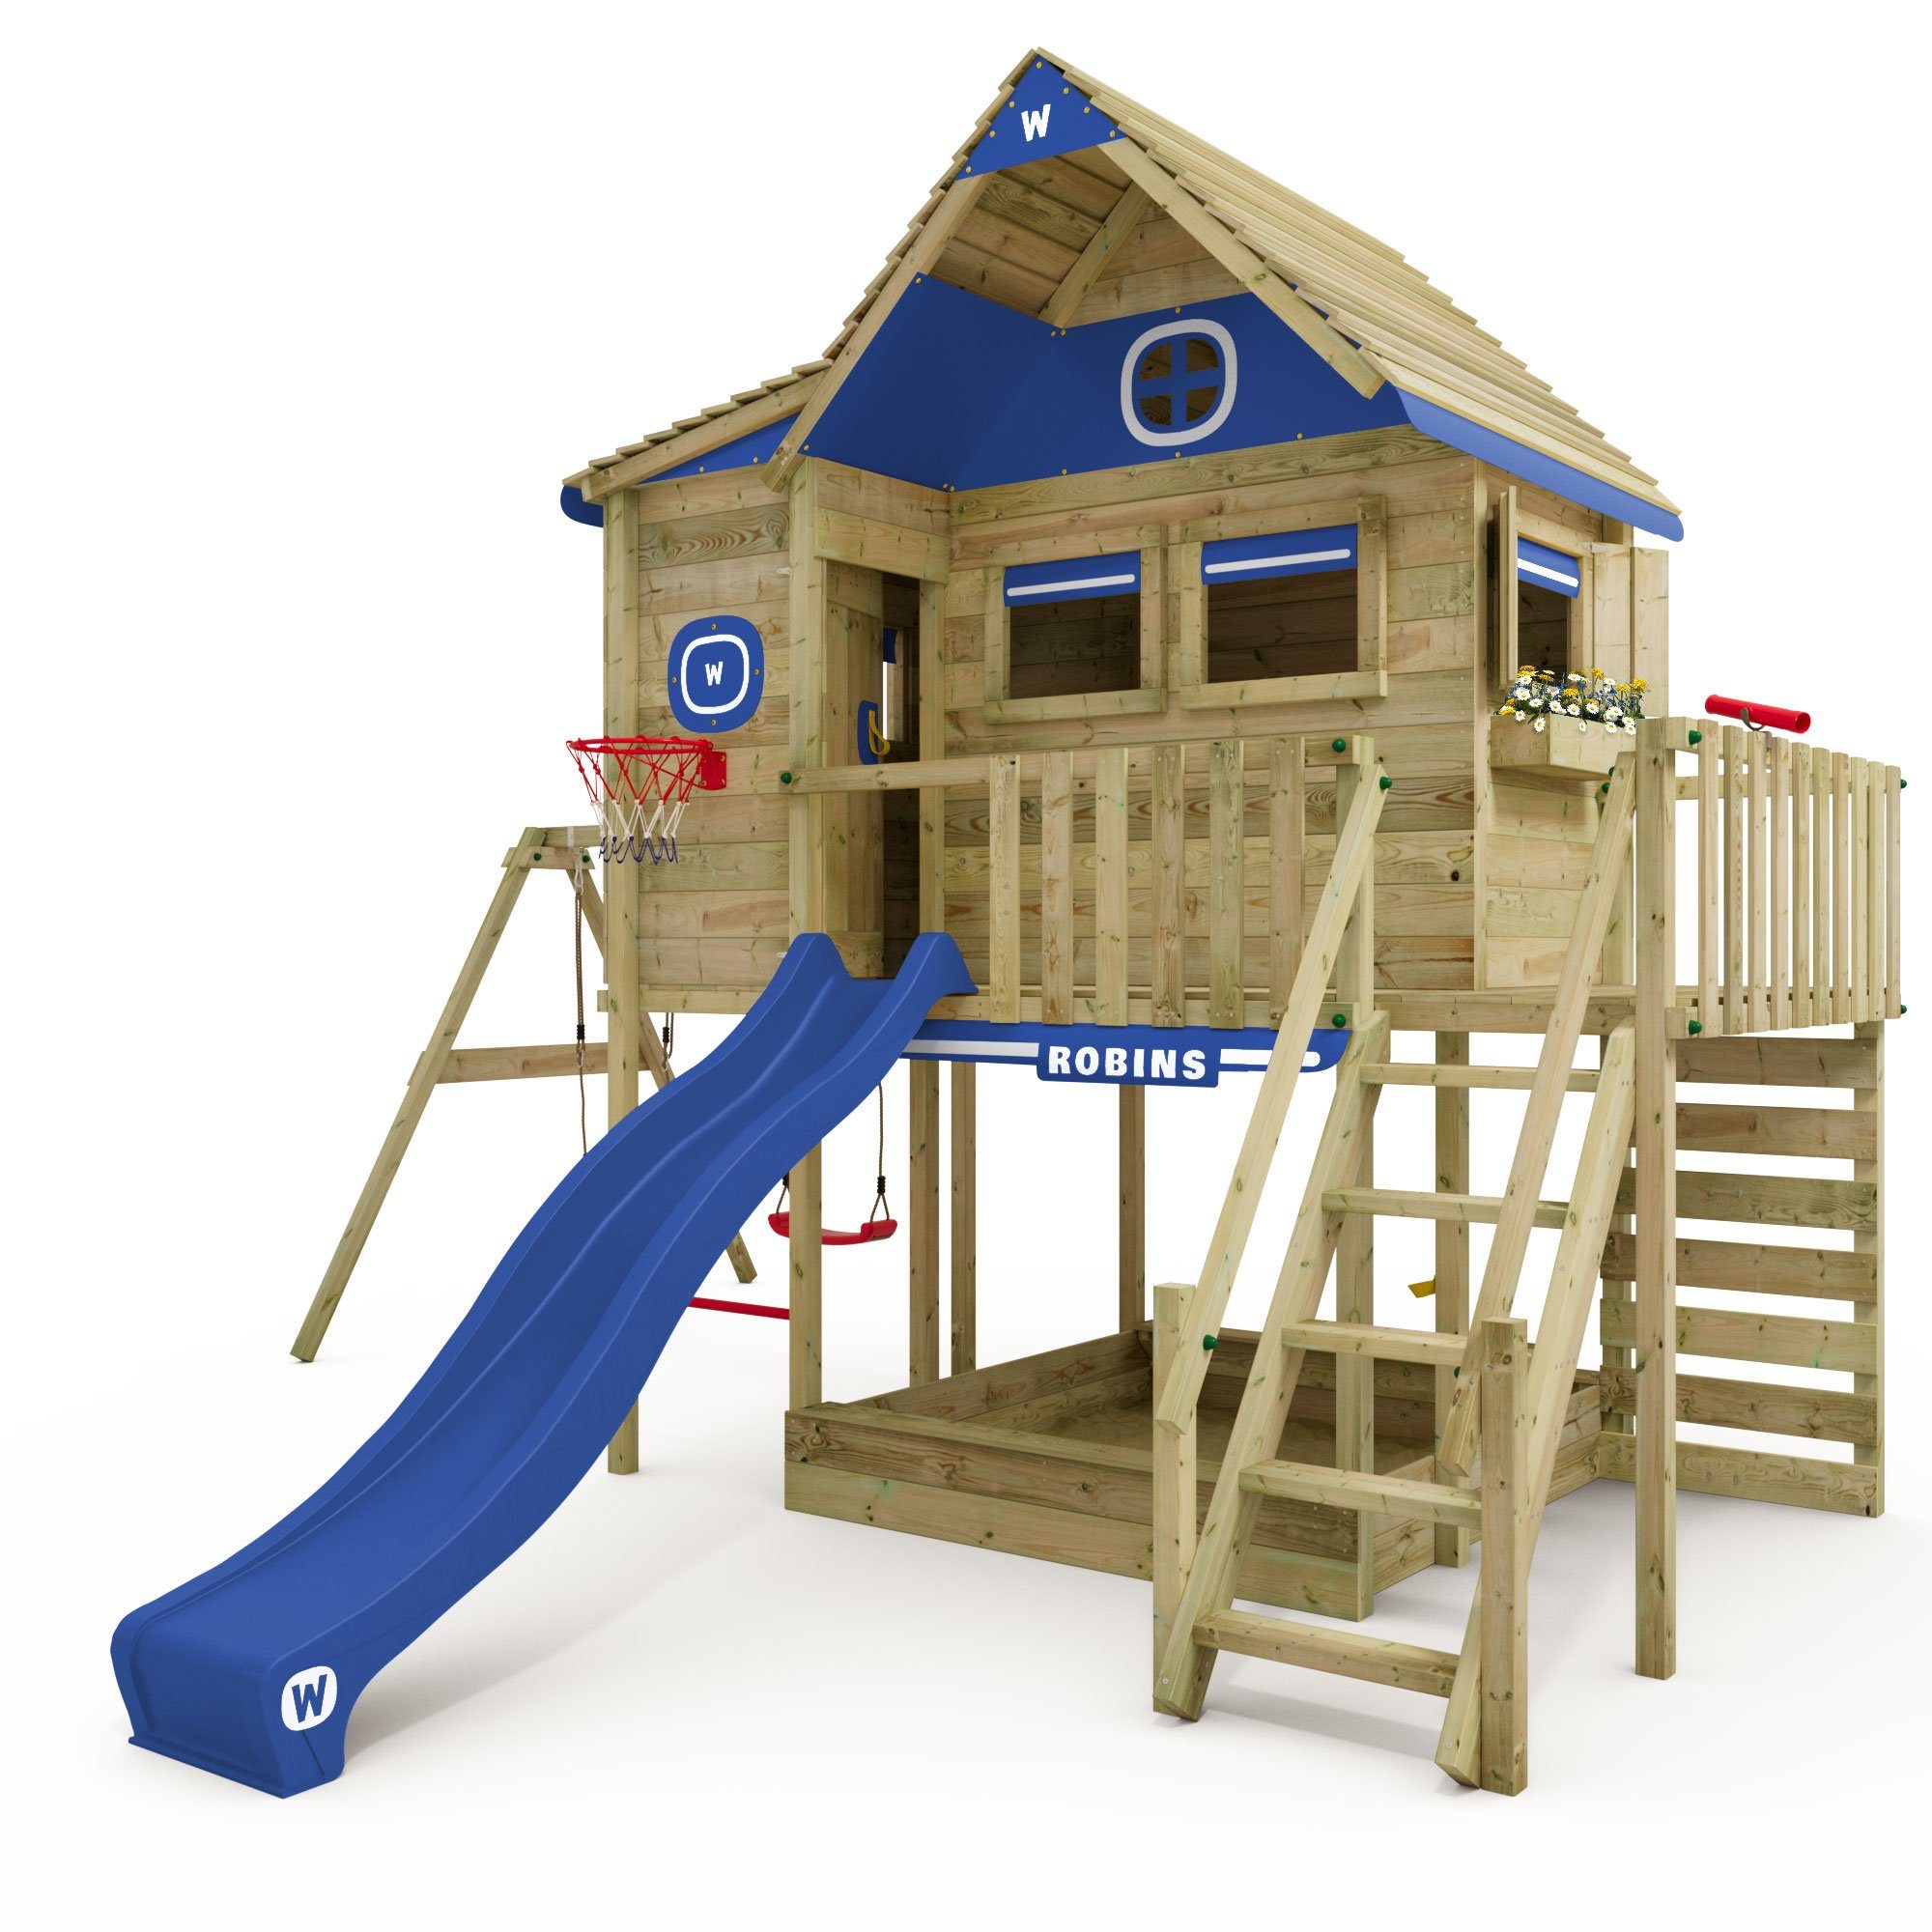 Wickey Klettergerüst Stelzenhaus Smart GreenHouse mit Schaukel & Rutsche, 10-Jahre Garantie*, Großes Spielhaus, Massive Treppe mit Handlauf blau